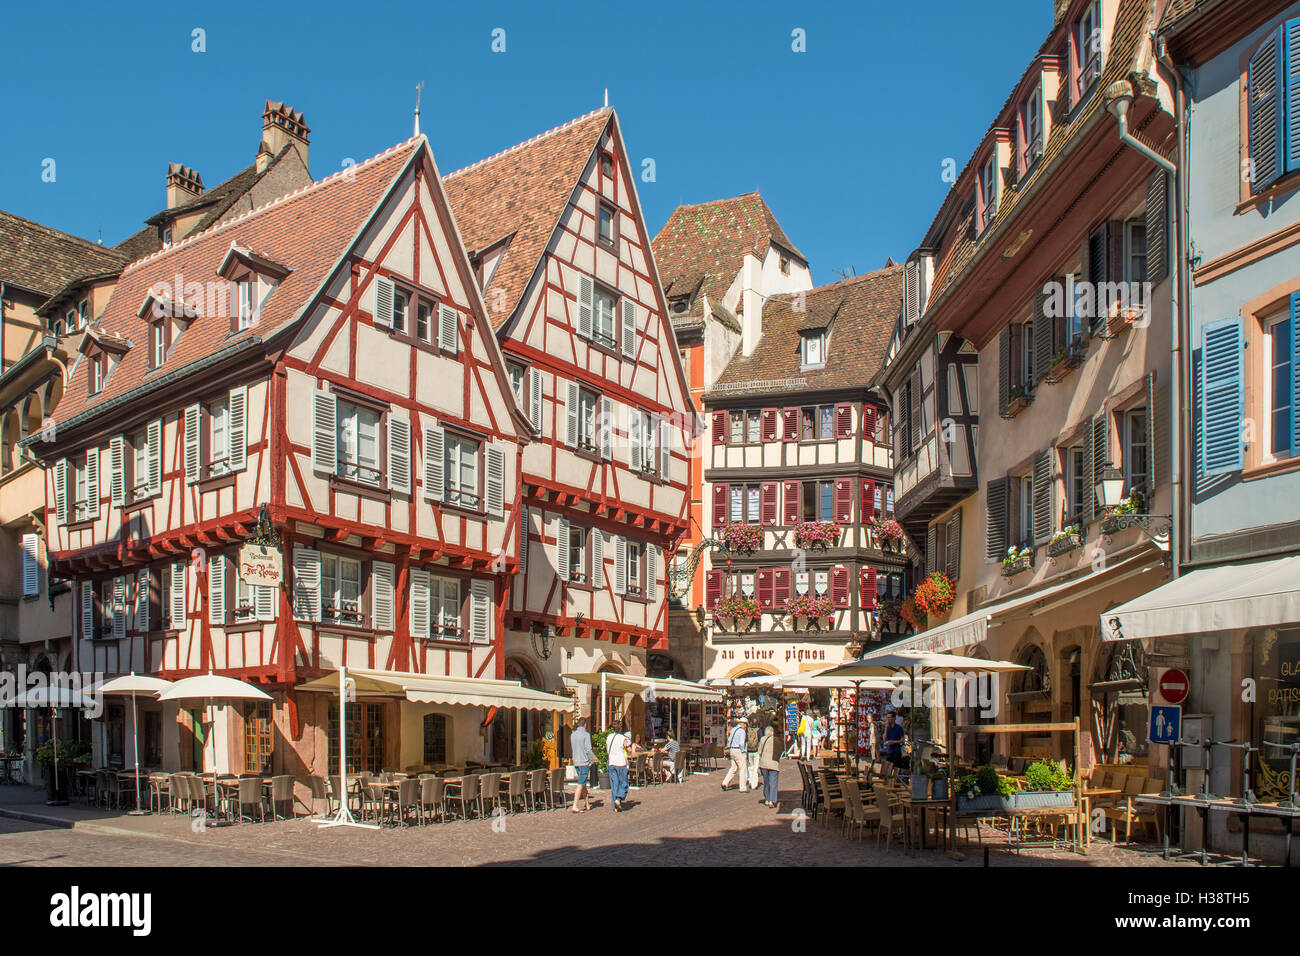 Old Buildings in Place du Marche-aux-Fruits, Colmar, Alsace, France Stock Photo